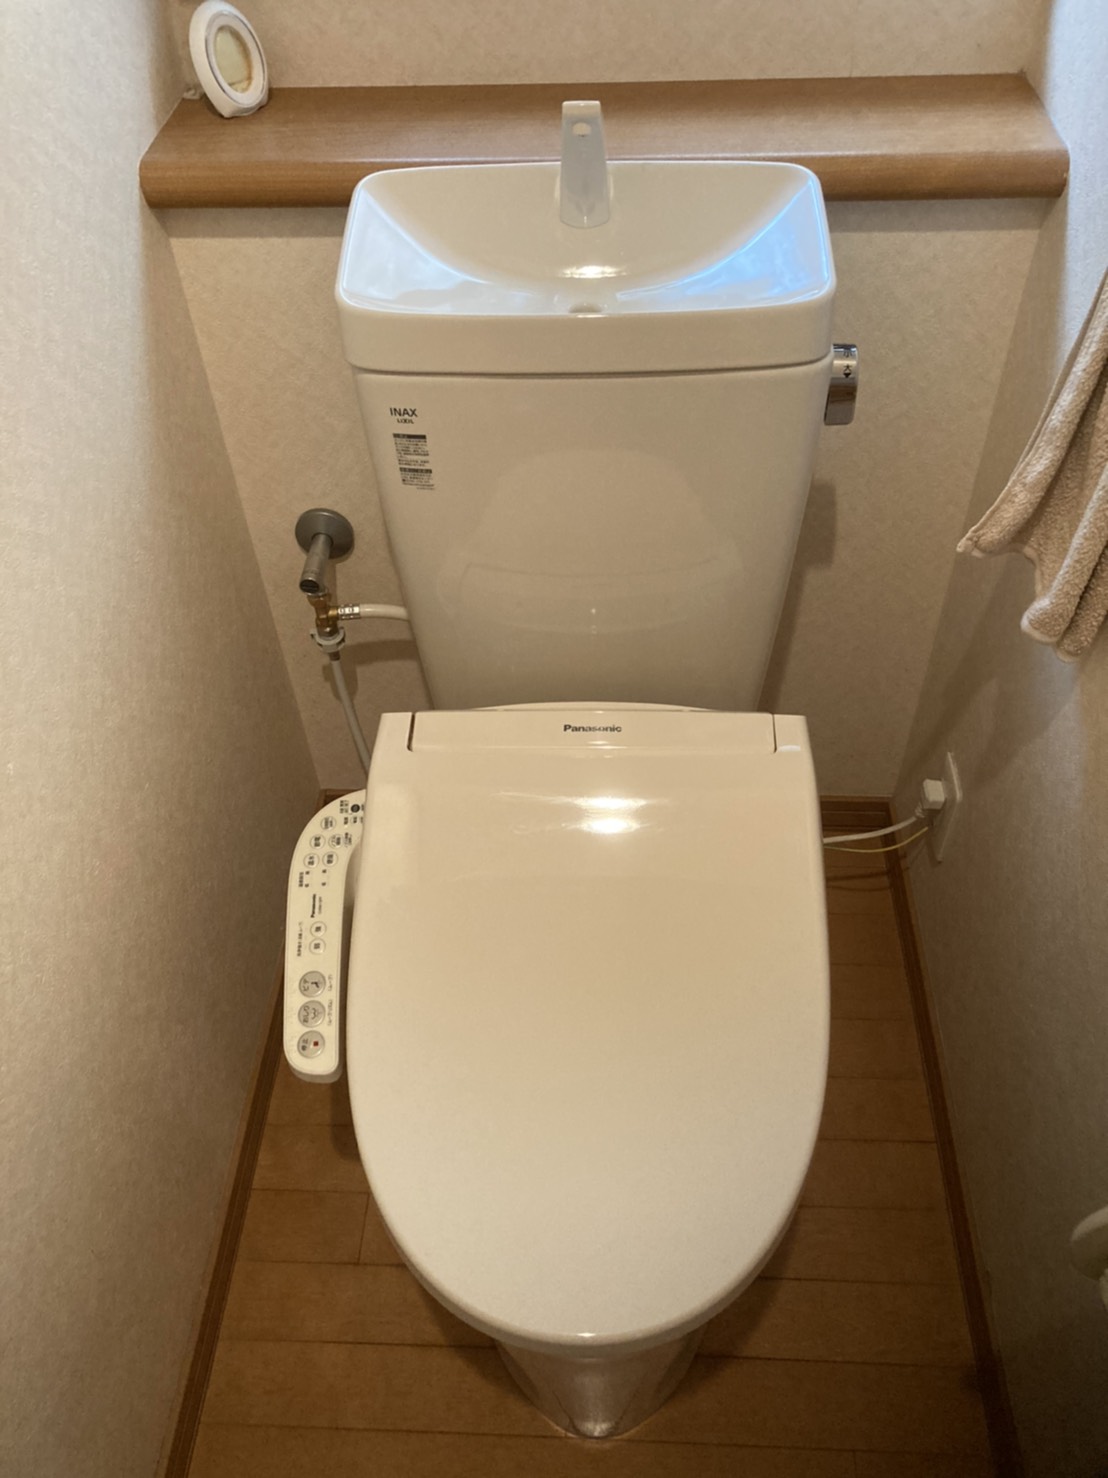 【京都府宇治市五ヶ庄】トイレのレバーとタンク内のチェーンが外れた。トイレ交換。 【公式】水漏れ・つまりを修理する